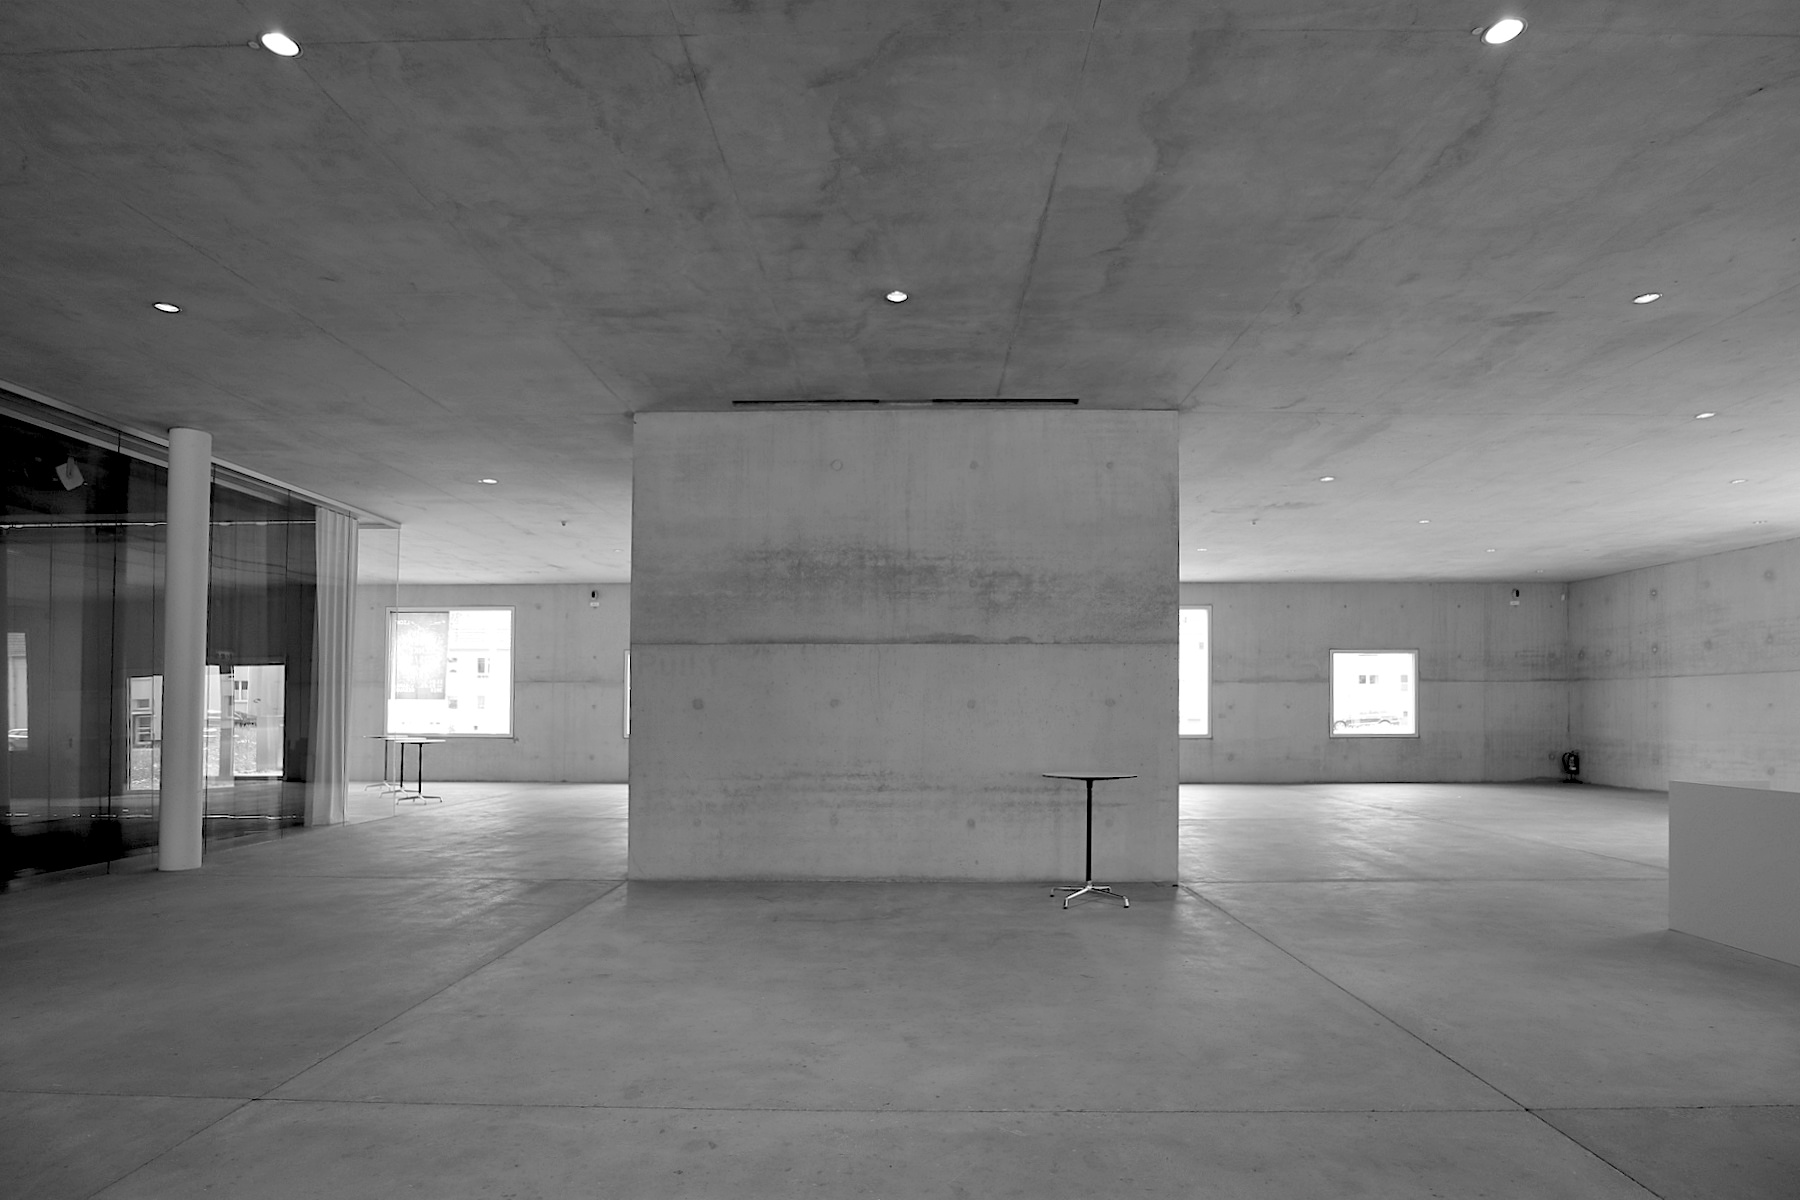 Kazuyo Sejima and Ryue Nishizawa gründeten ihr Büro 1995 und erhielten 2010 den wichtigsten Architekturpreis der Welt: den Pritzker-Preis. Eine Ehrung auch für ihre Arbeit am 34 Meter hohen Kubus, dessen Gestaltungsprinzipien sich an den Vorstellungen der Modernisten anlehnt.